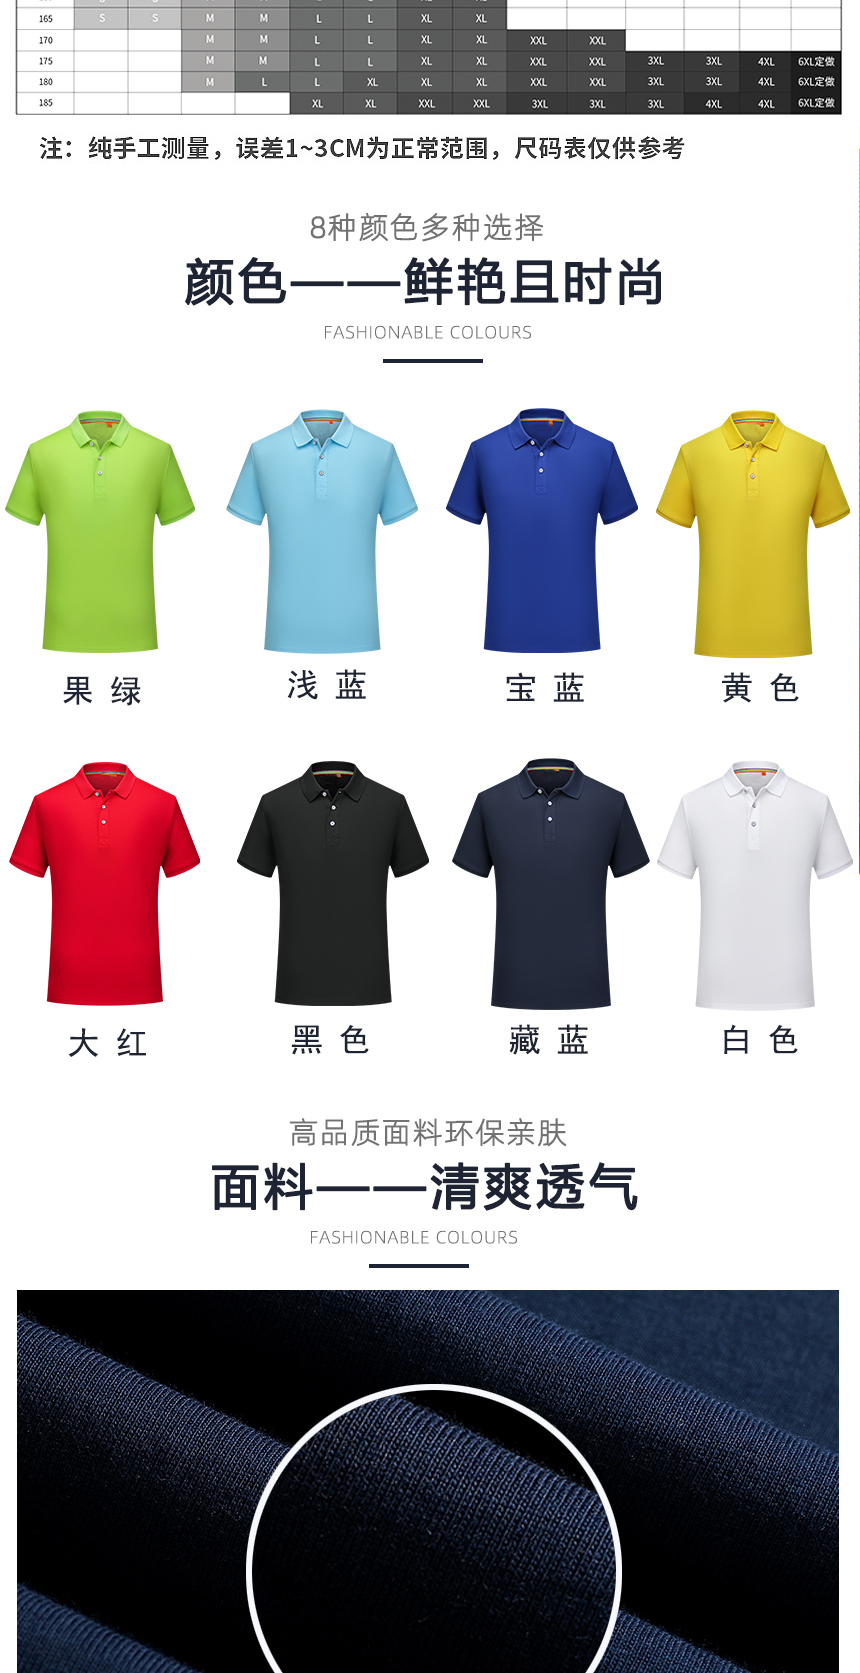 男T恤衫同款不同颜色款式展示，男T恤衫精选优质面料